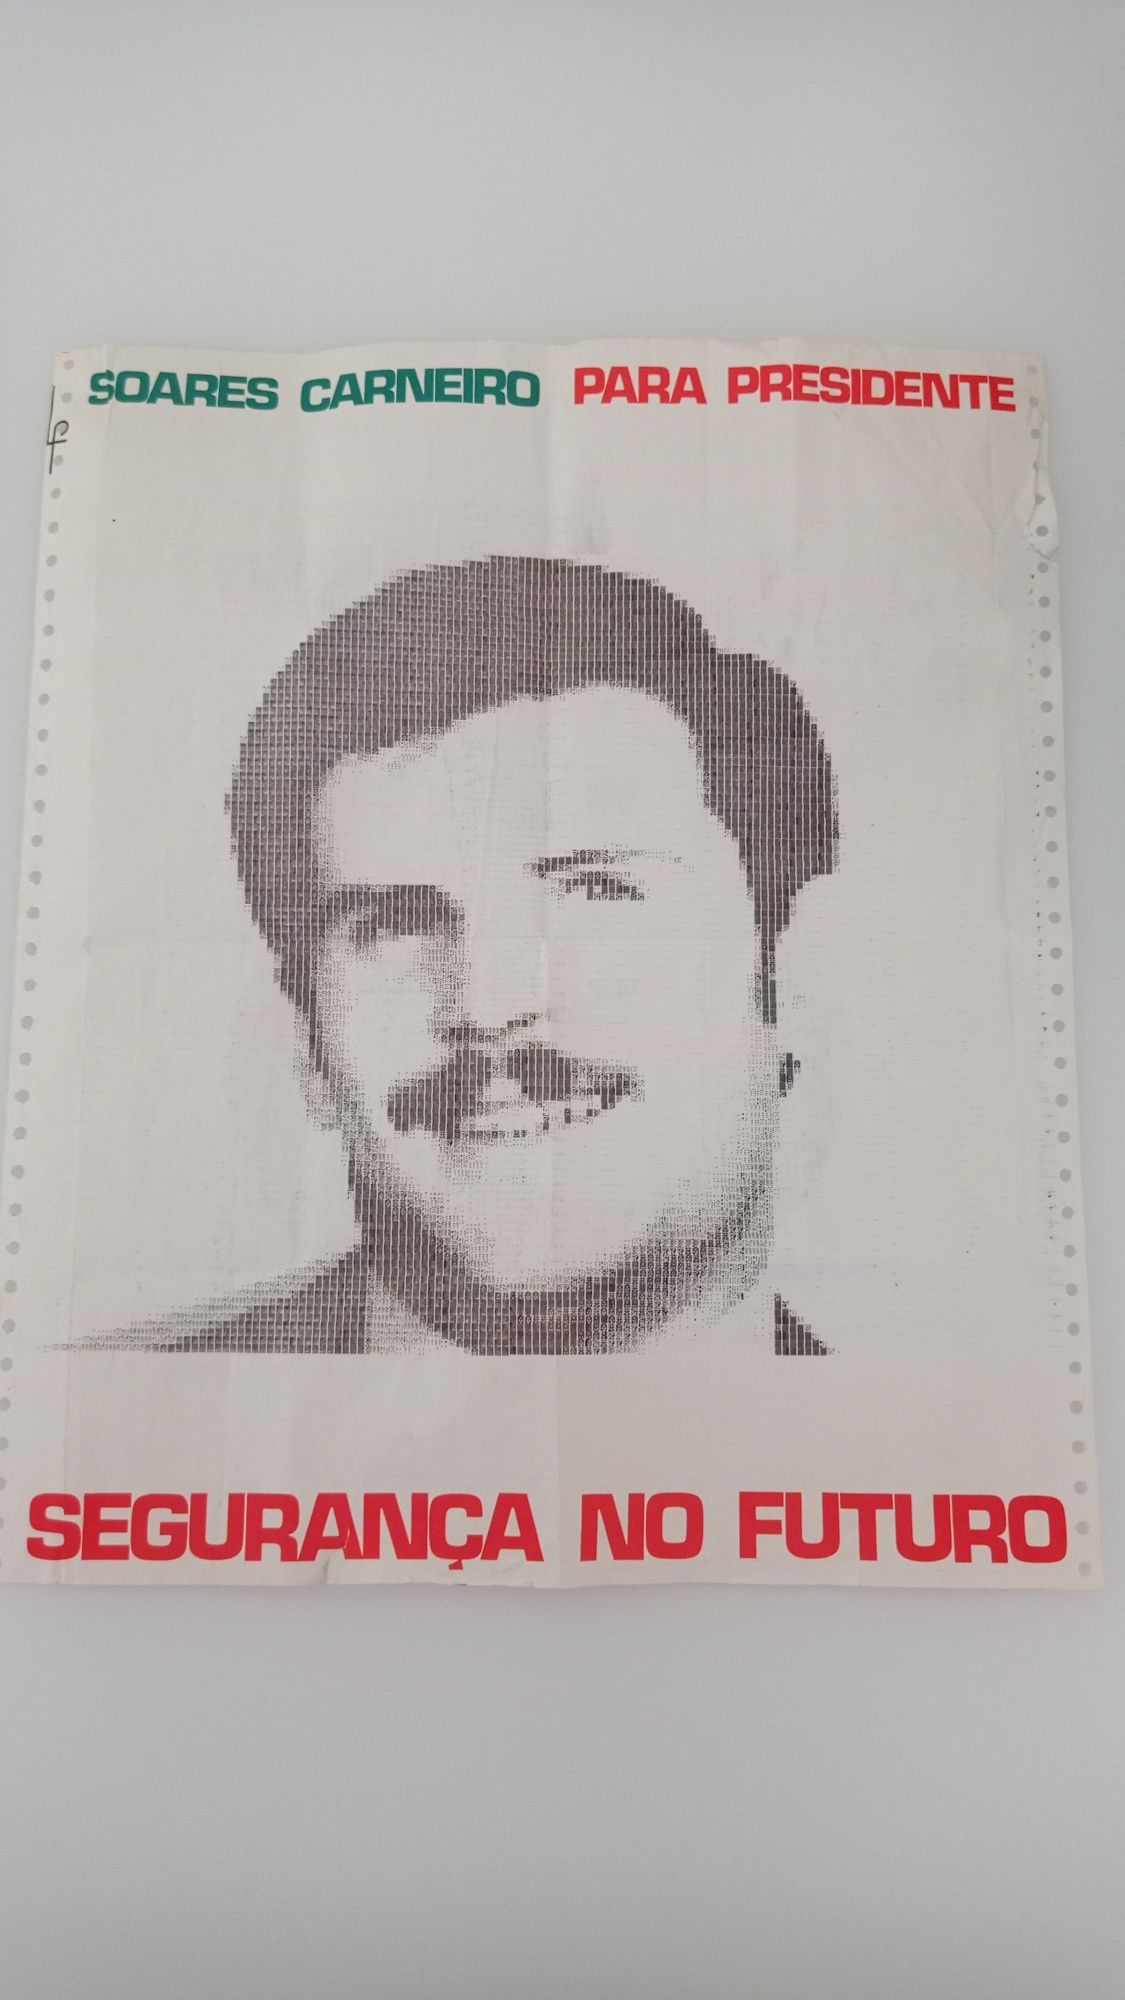 Cartaz satírico Soares Carneiro